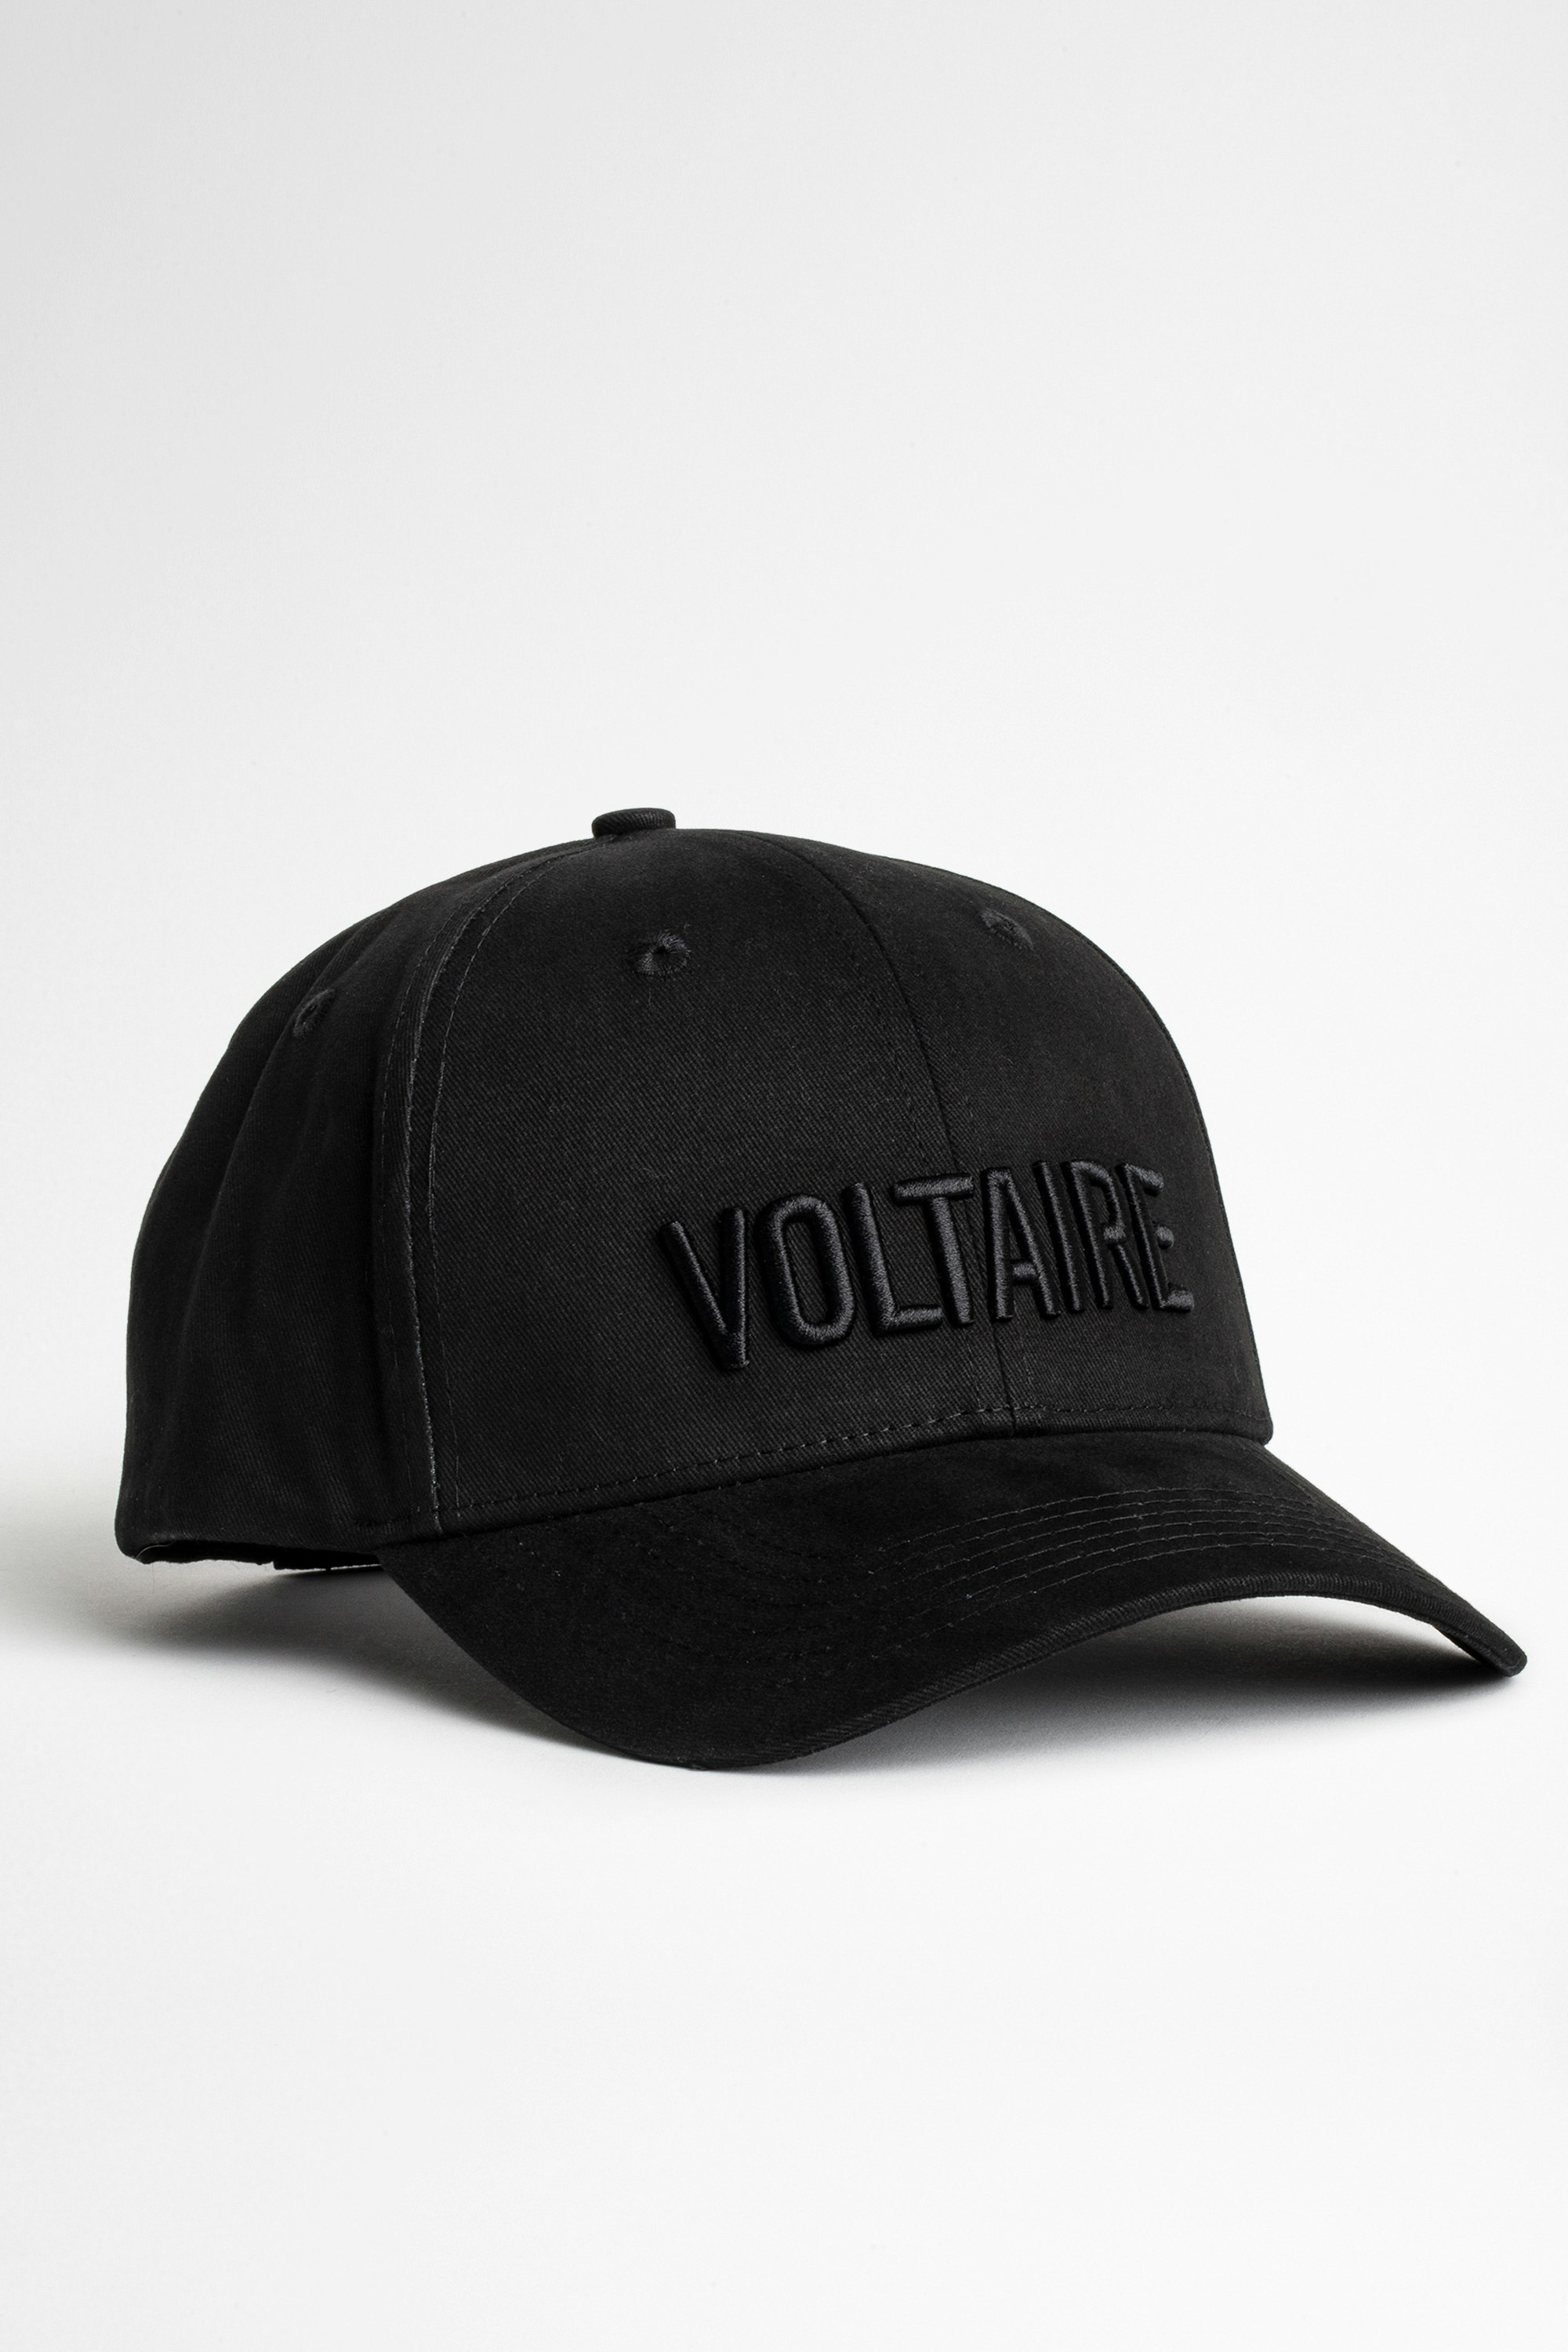 Klelia Voltaire Cap Men’s black cap